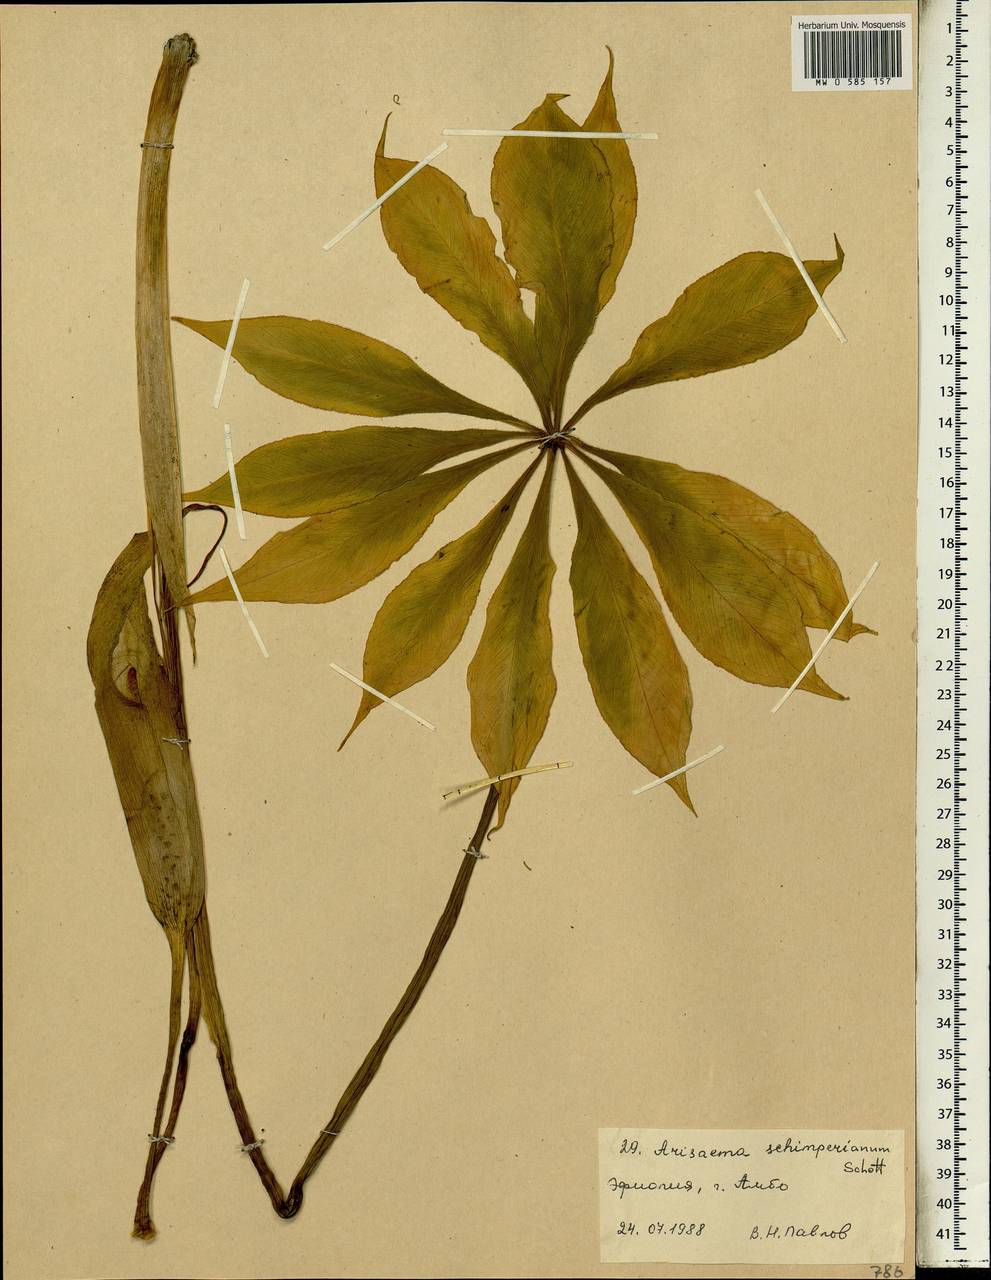 Arisaema schimperianum Schott, Africa (AFR) (Ethiopia)